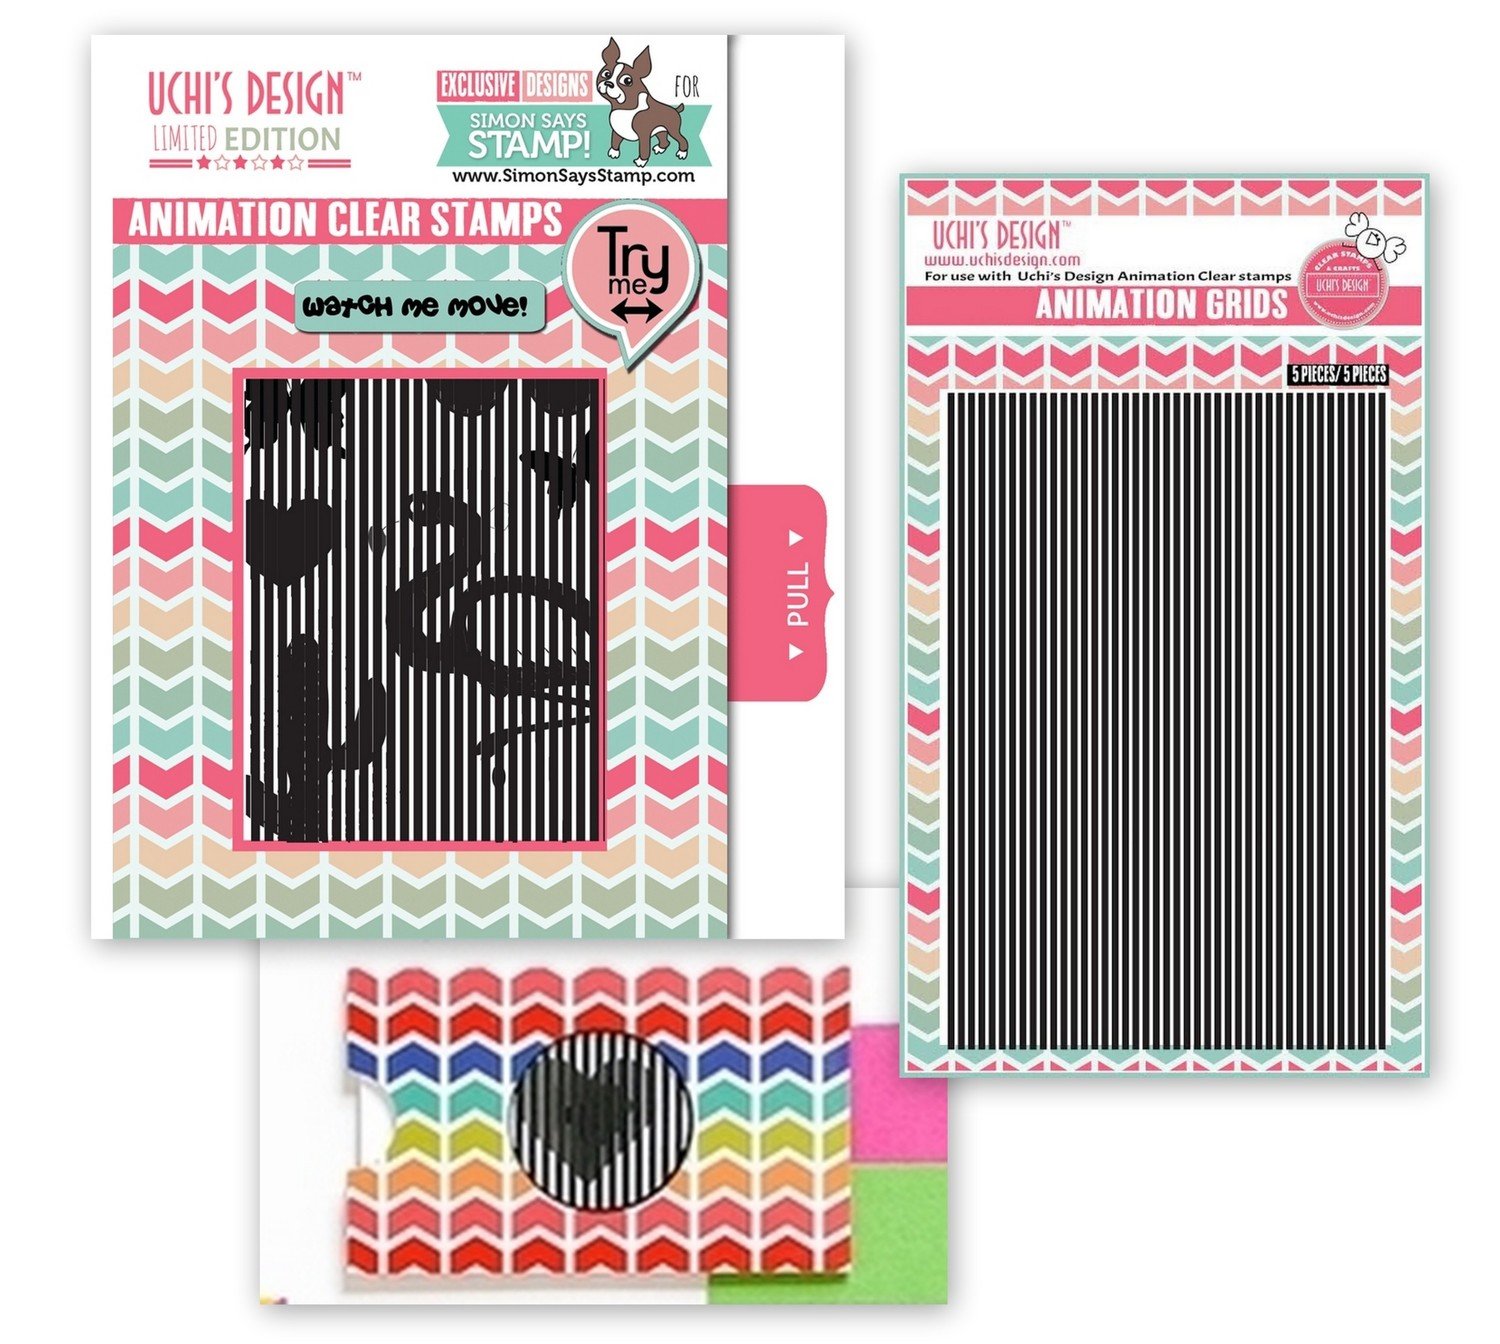 SSS Uchi's Design ANIMATION Clear Stamp Set Bundle